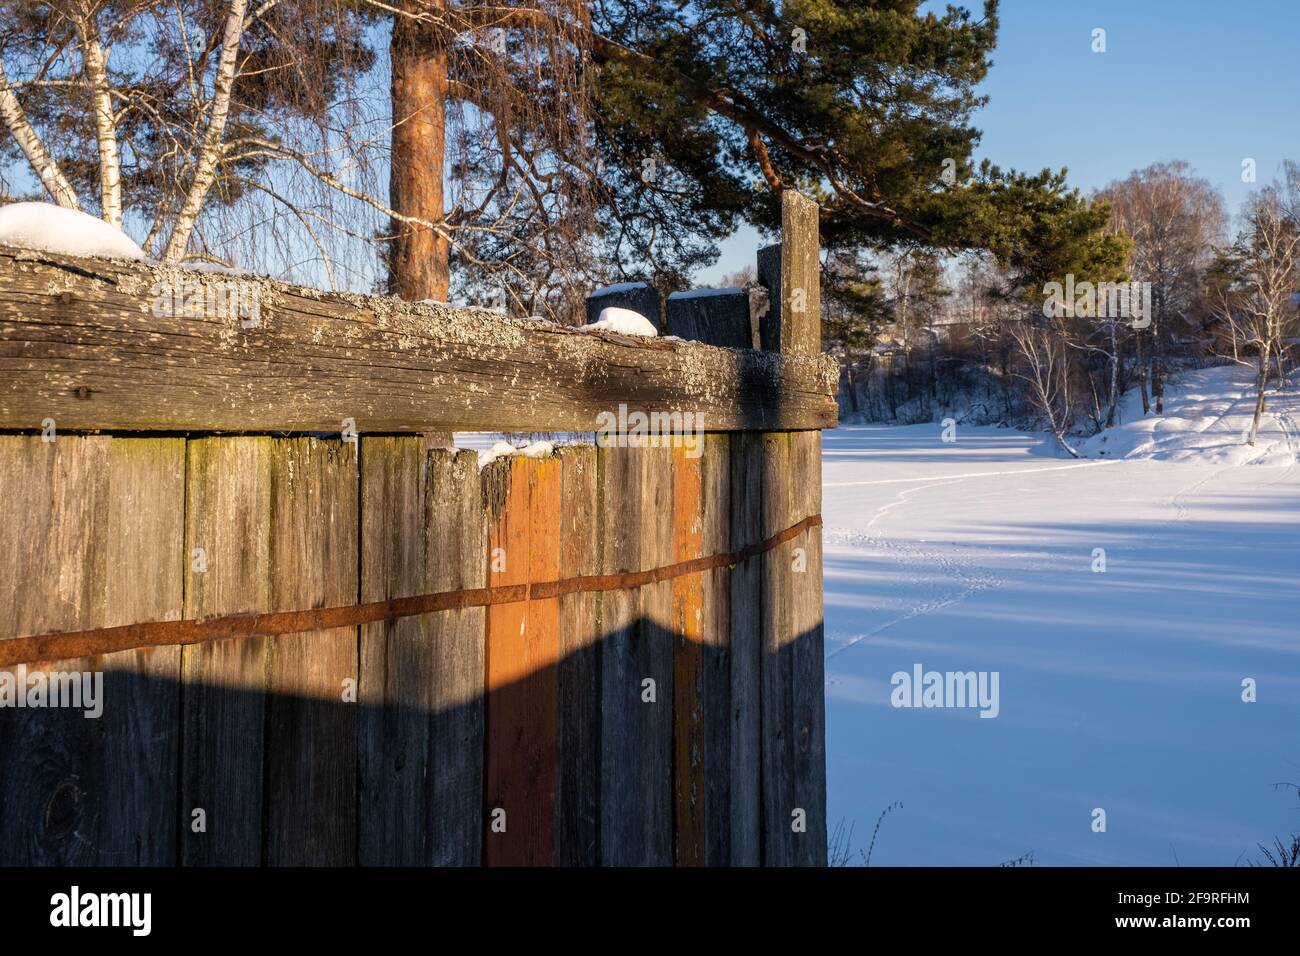 L'angolo di una vecchia recinzione in legno alla luce del sole invernale, la Russia. Foto Stock